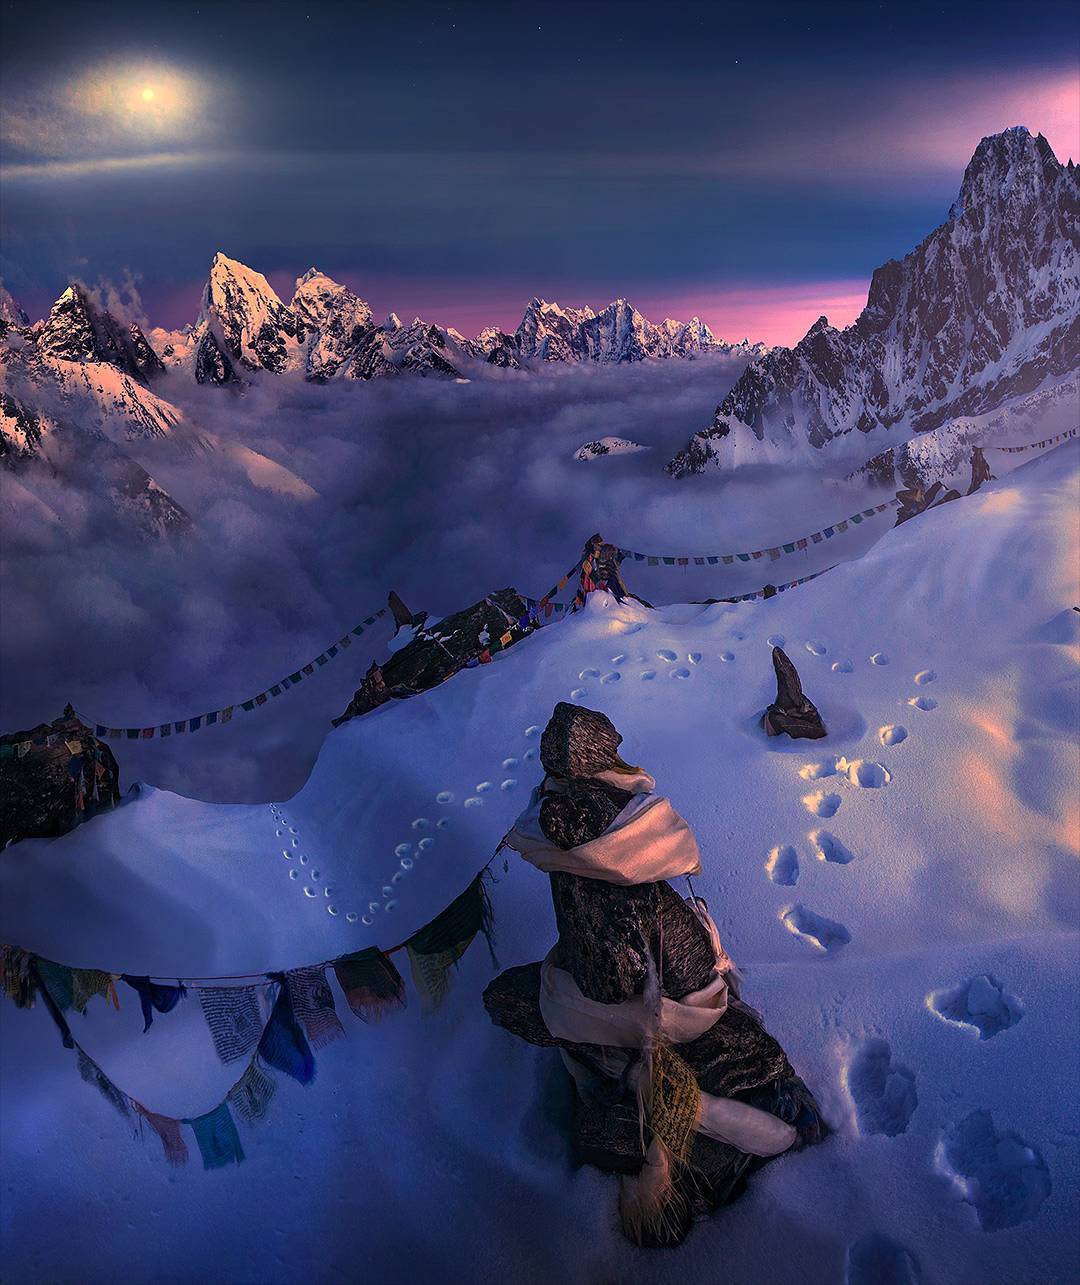  尼泊尔喜马拉雅山脉的夜景，来自摄影师Max Rive。 